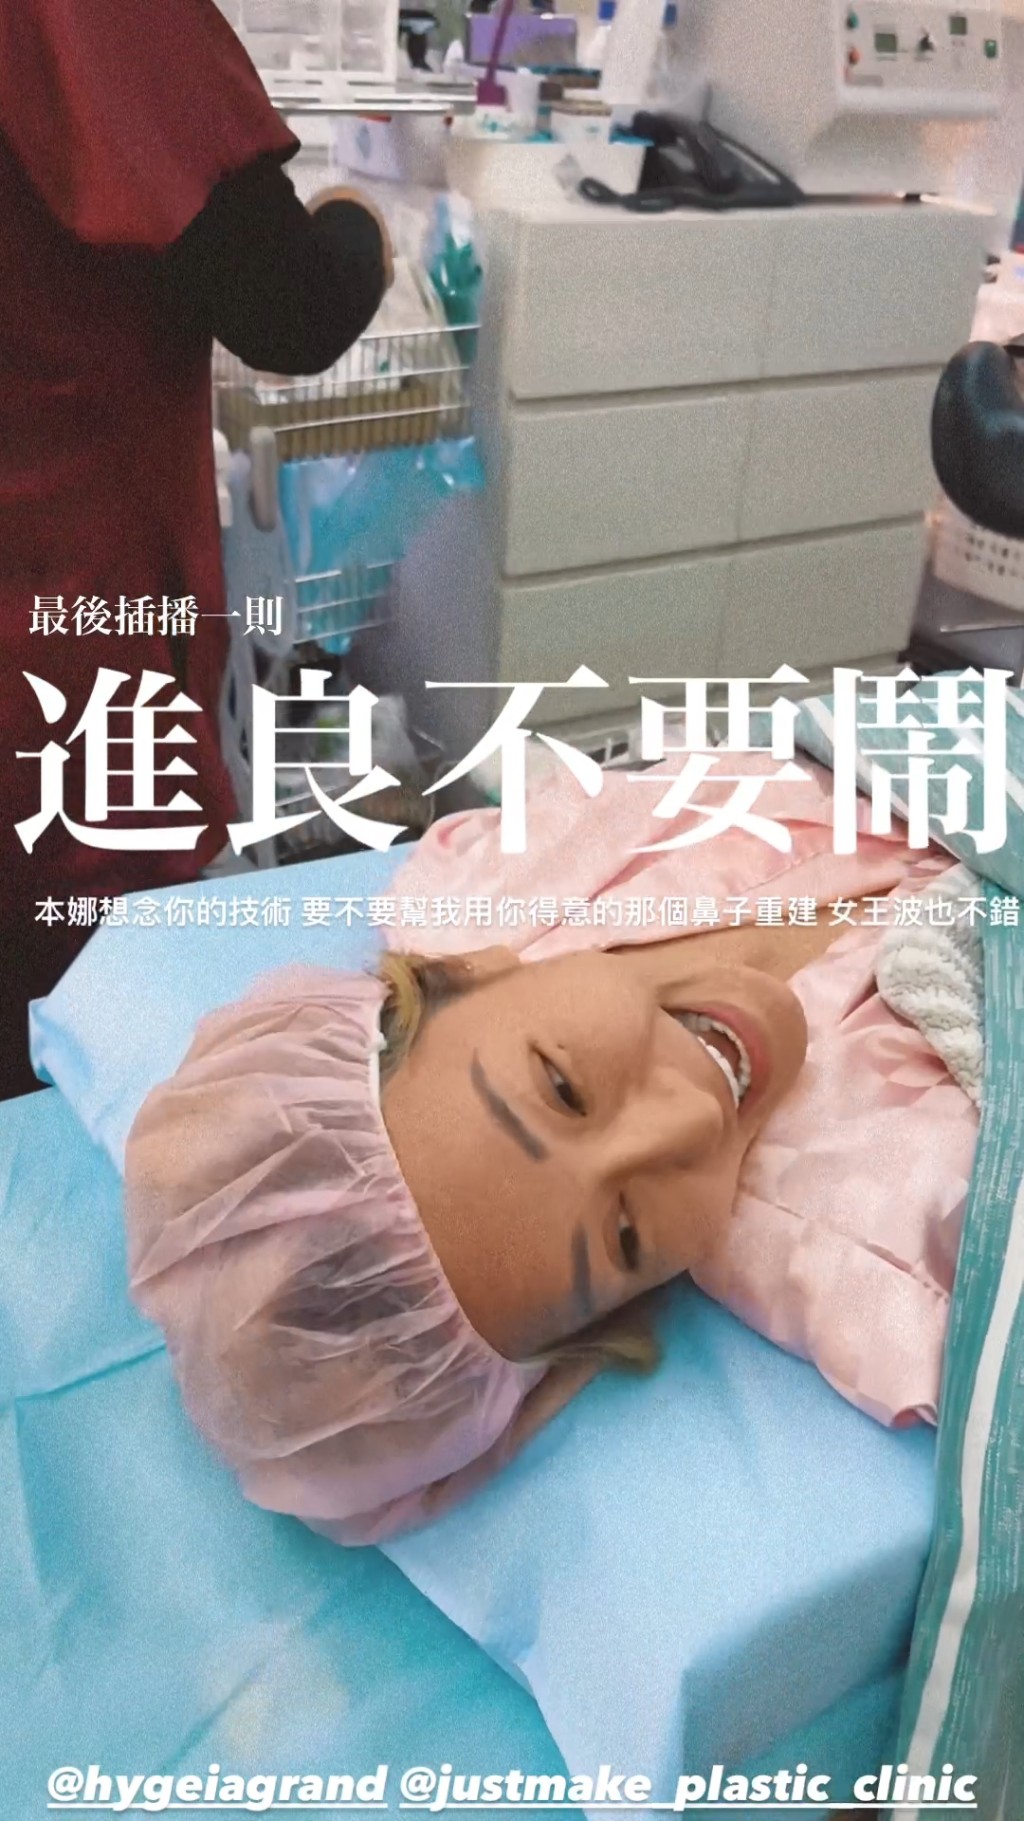 梁云菲昨日在IG晒出在诊所做手术的照片，更自爆做「一线鲍手术」。